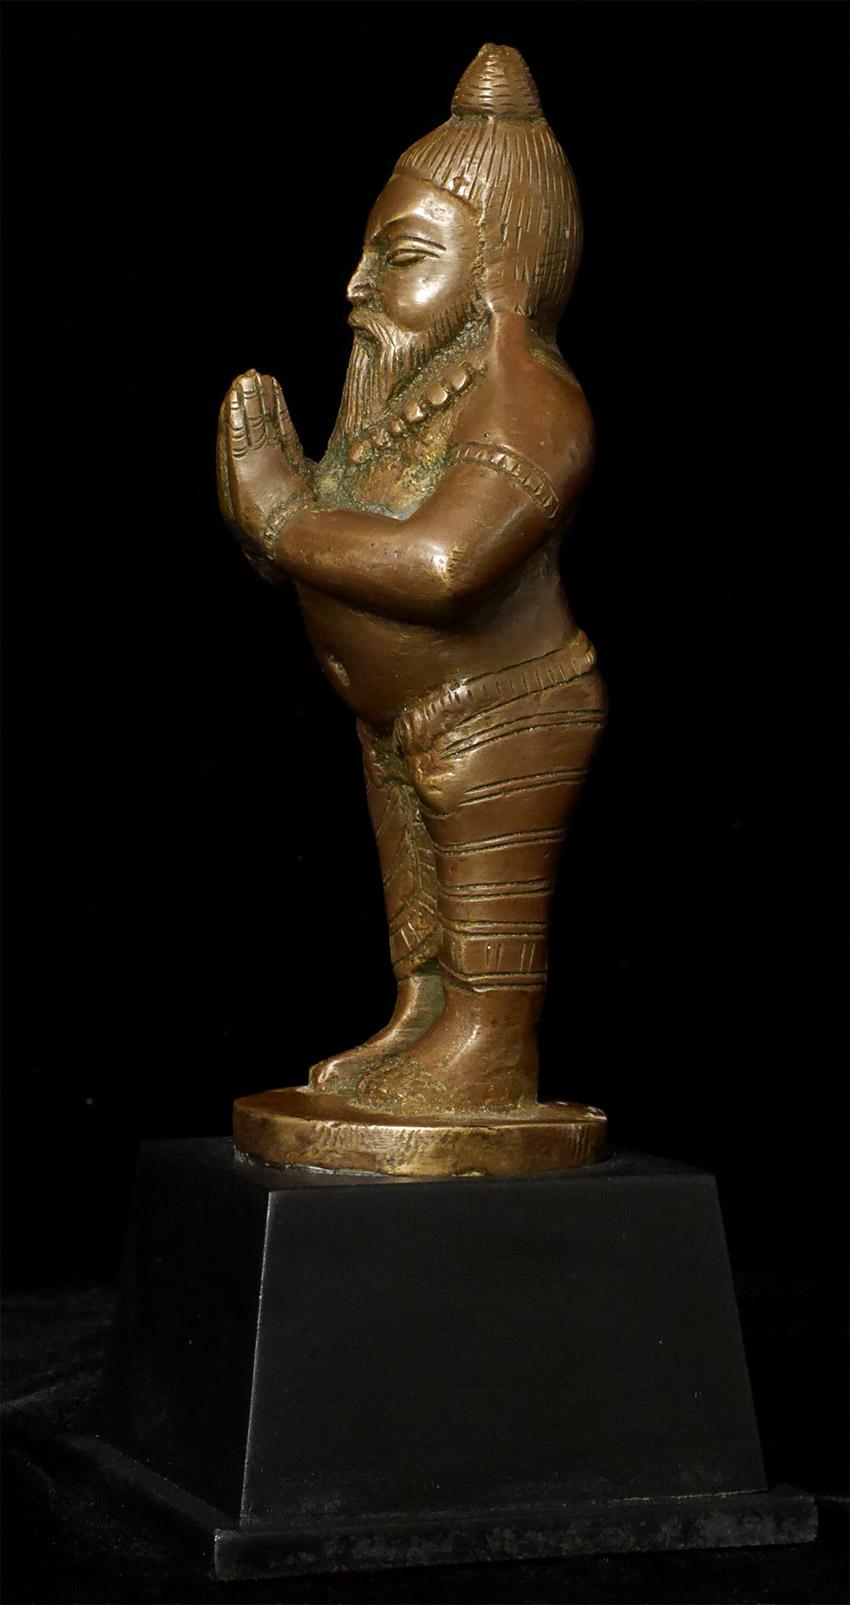 Antique Bronze Indian Yogi, Unique Solid-Cast Hindu Sculpture - 7816 For Sale 1